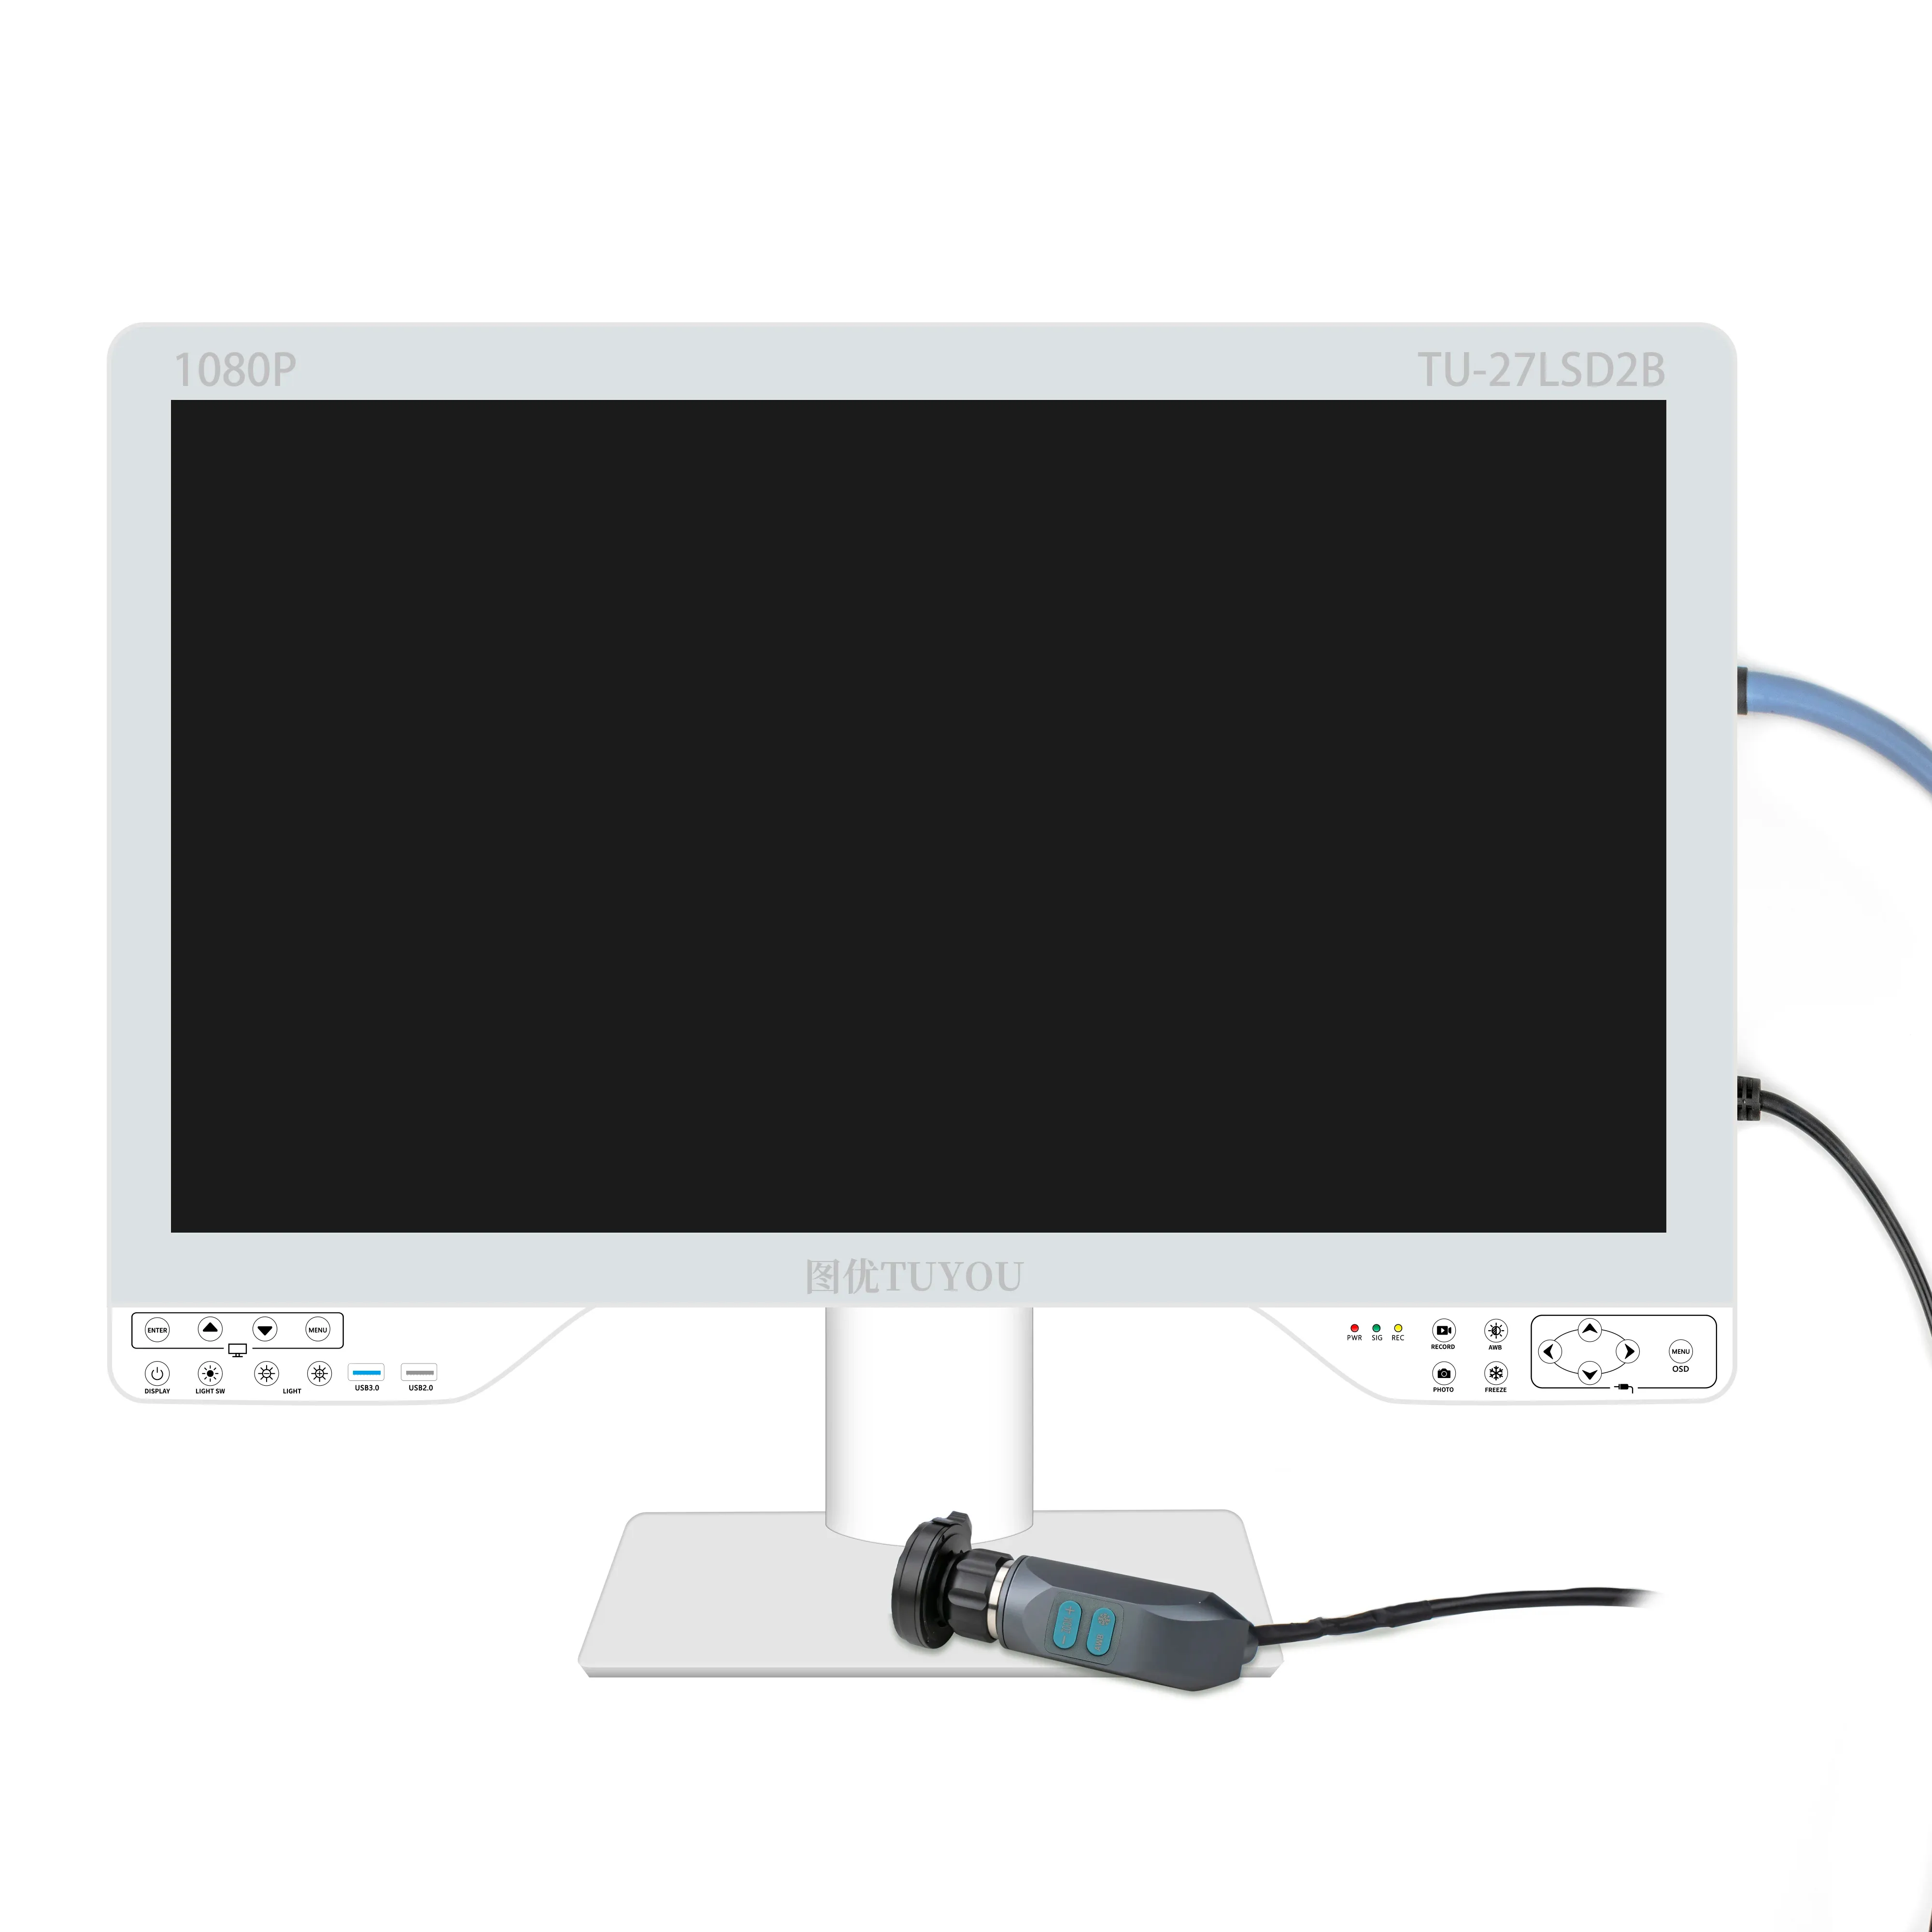 Equipo de endoscopia médica con fuente de luz fría LCD de 27 pulgadas y 1080P para cirugía laparoscópica con registro USB